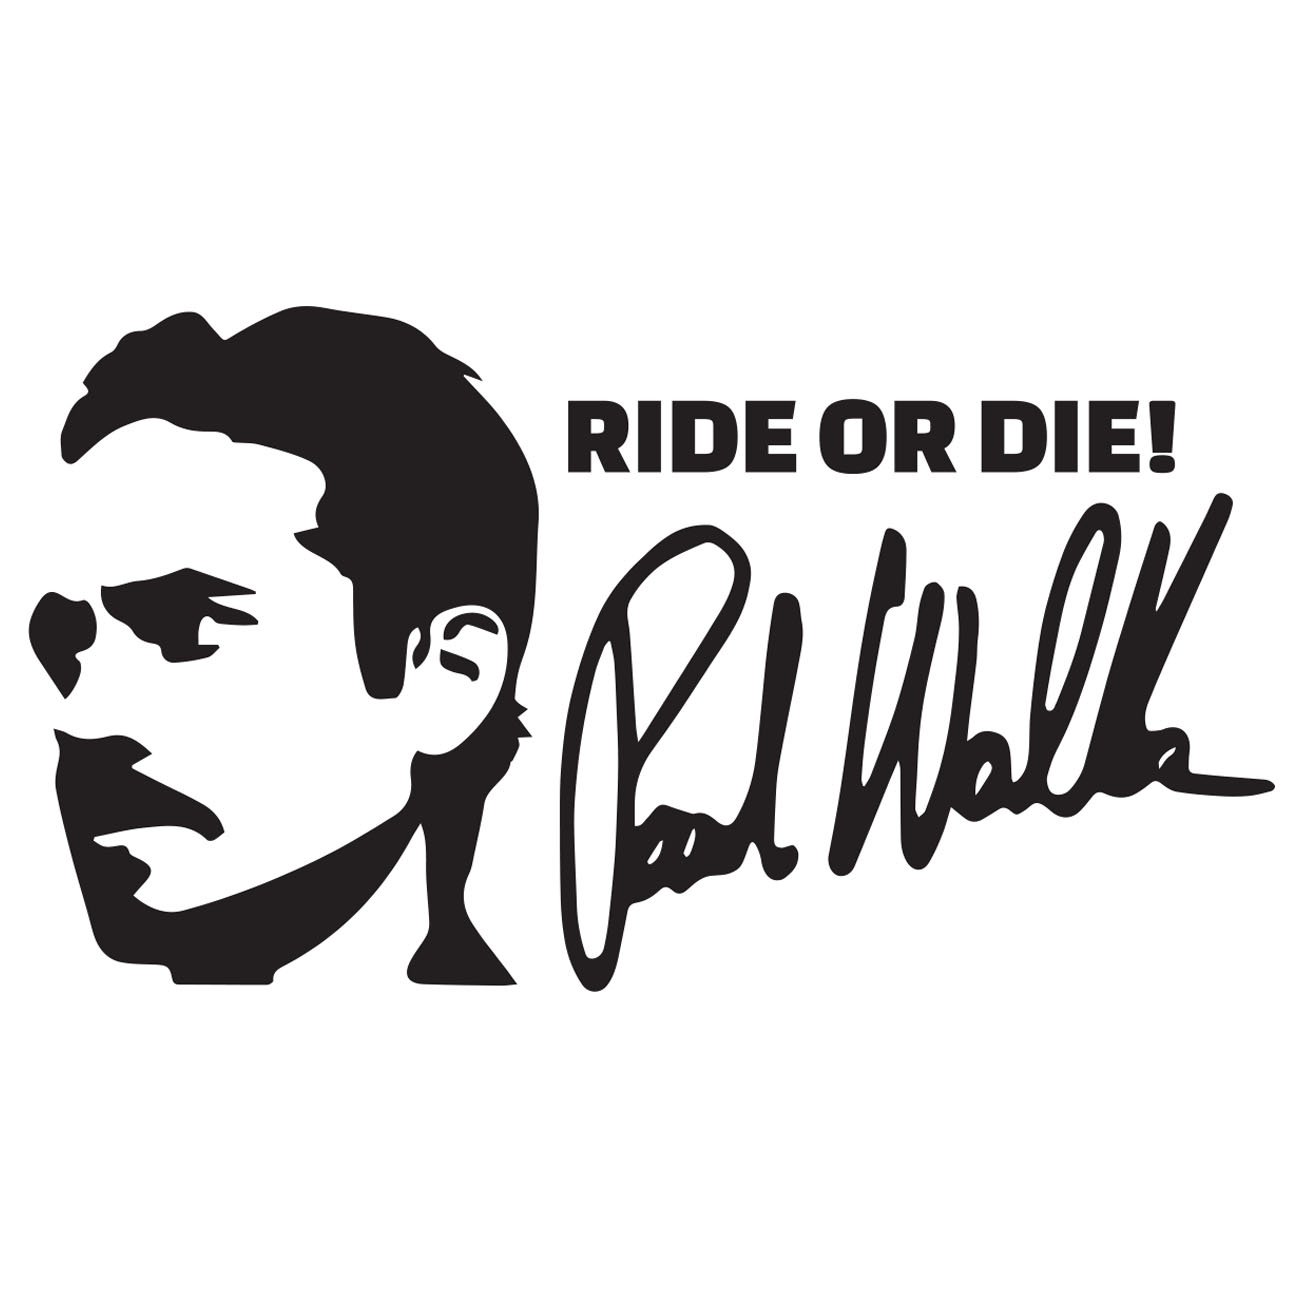 Ride or die - Paul Walker 1